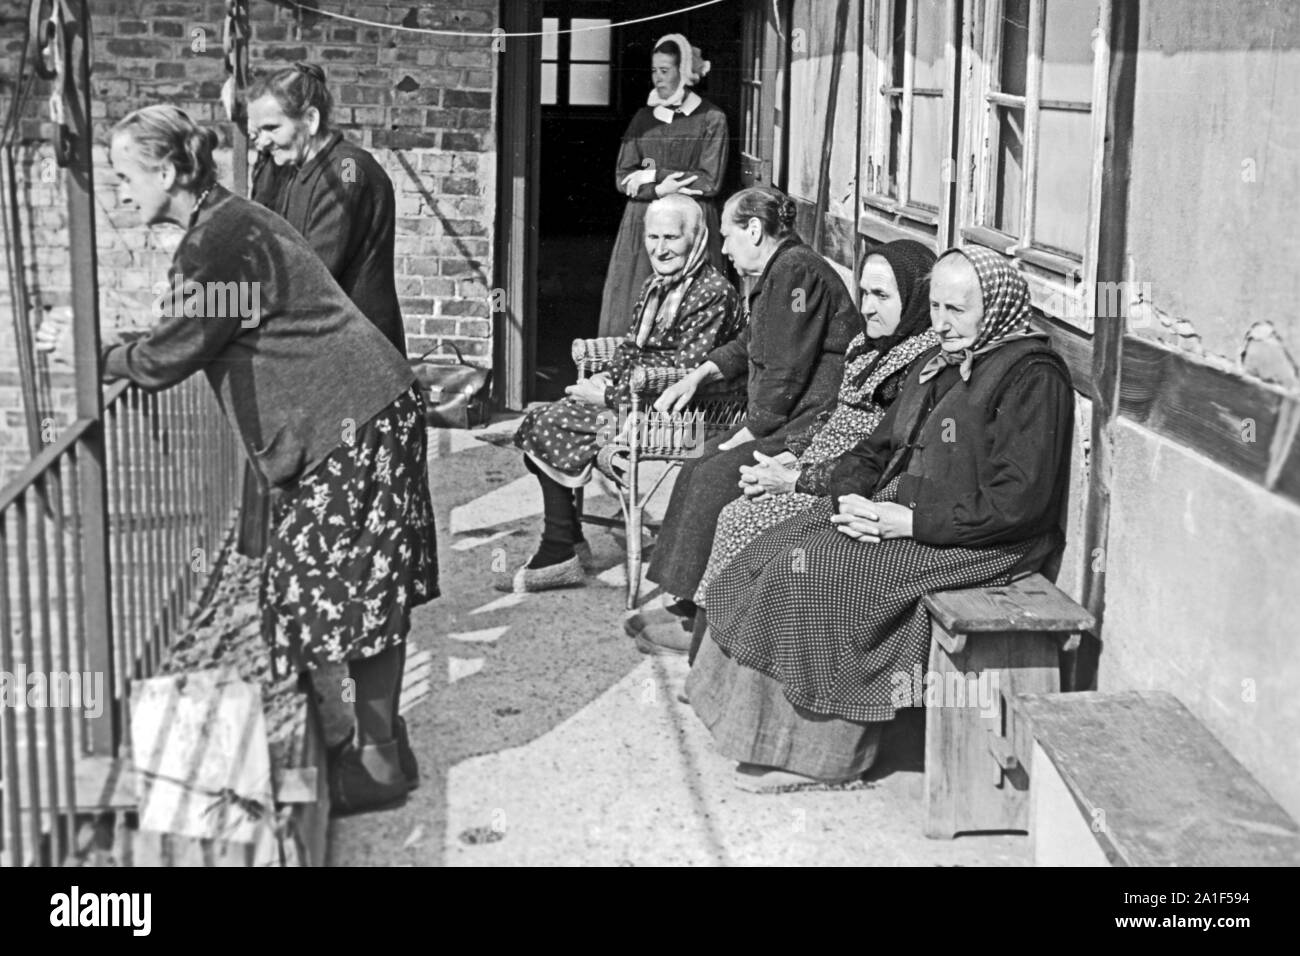 Ältere Frauen stehen auf einem eines Balkon Altersheims en Frankfurt an der Oder, Alemania 1948. Las mujeres mayores en un balcón de un hogar de ancianos en Frankfurt/Oder, Alemania 1948. Foto de stock